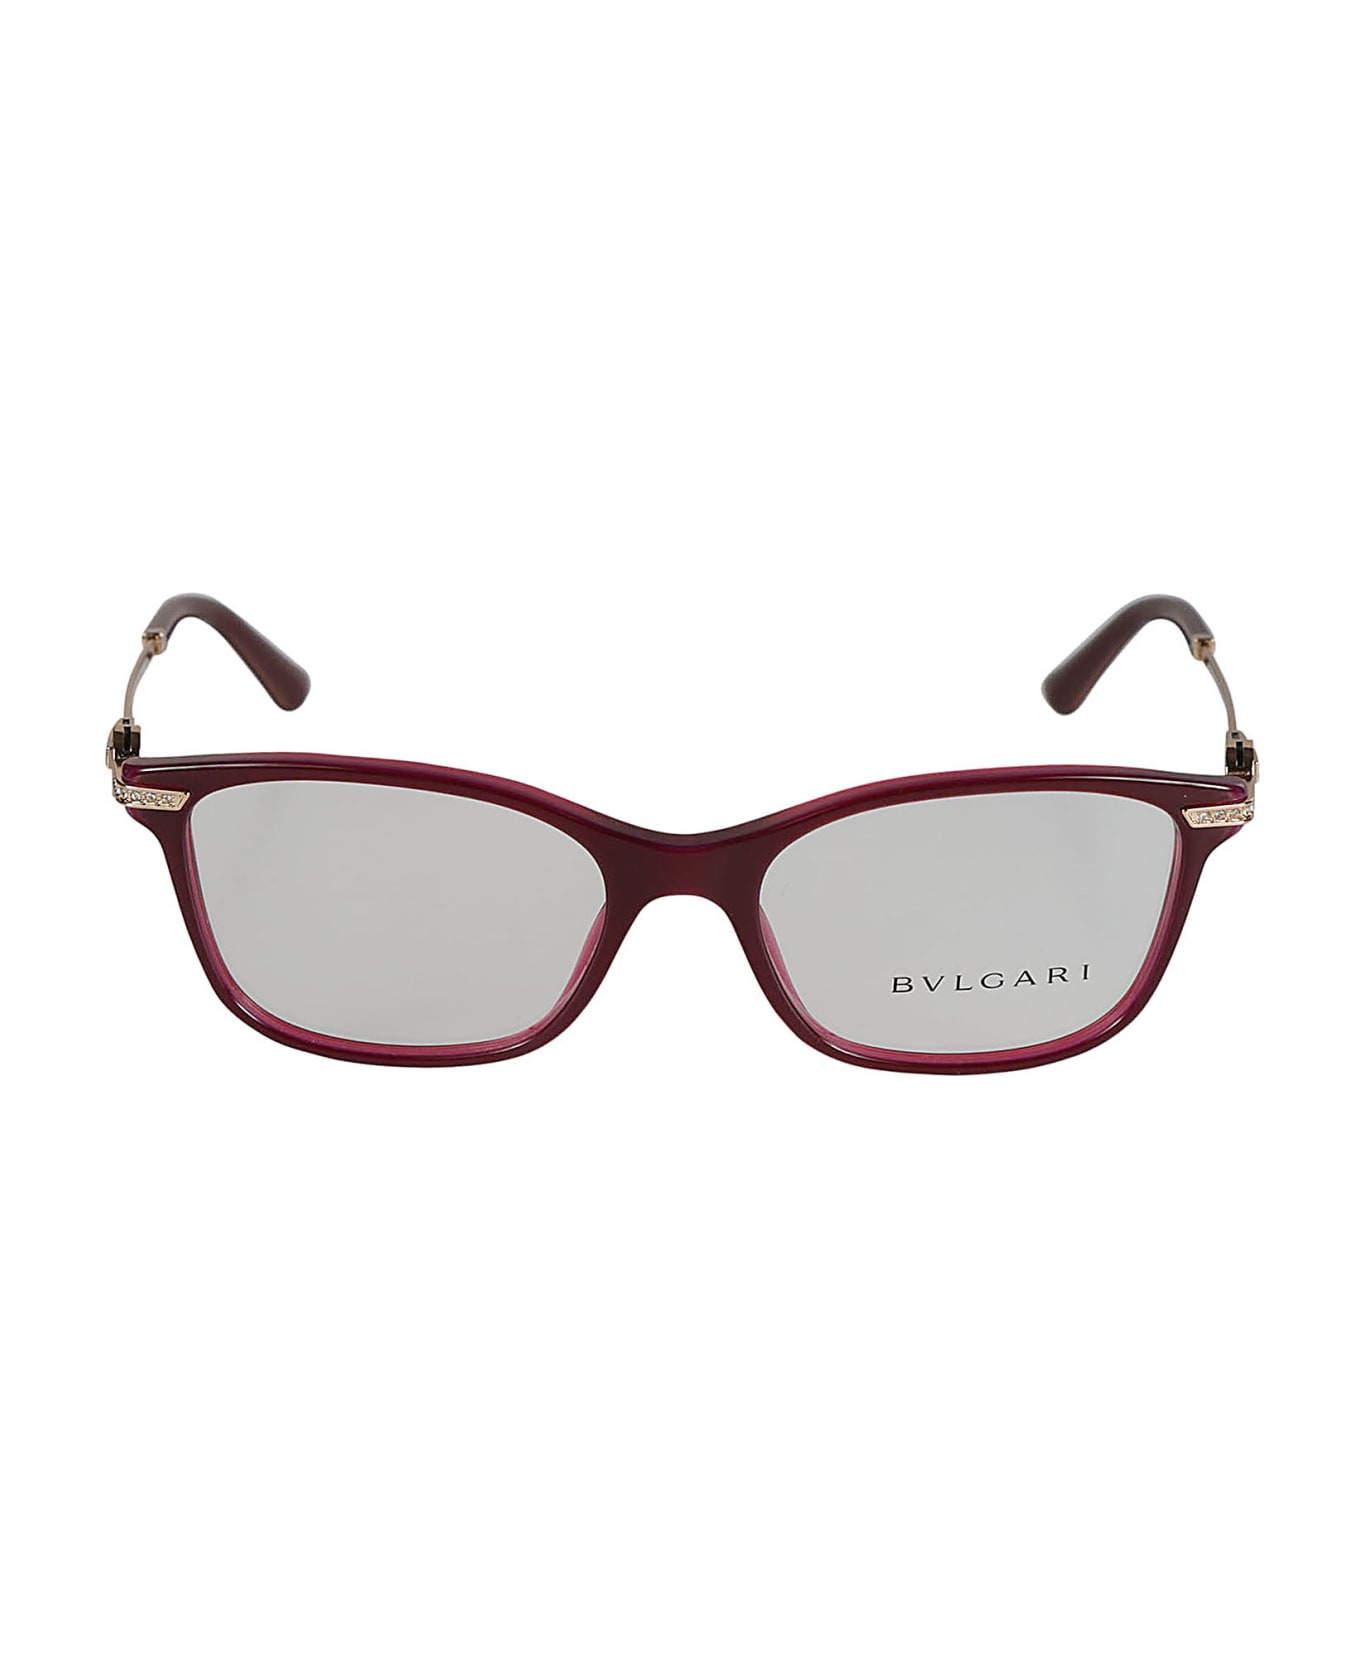 Bulgari Crystal Embellished Cat-eye Glasses - 5426 アイウェア